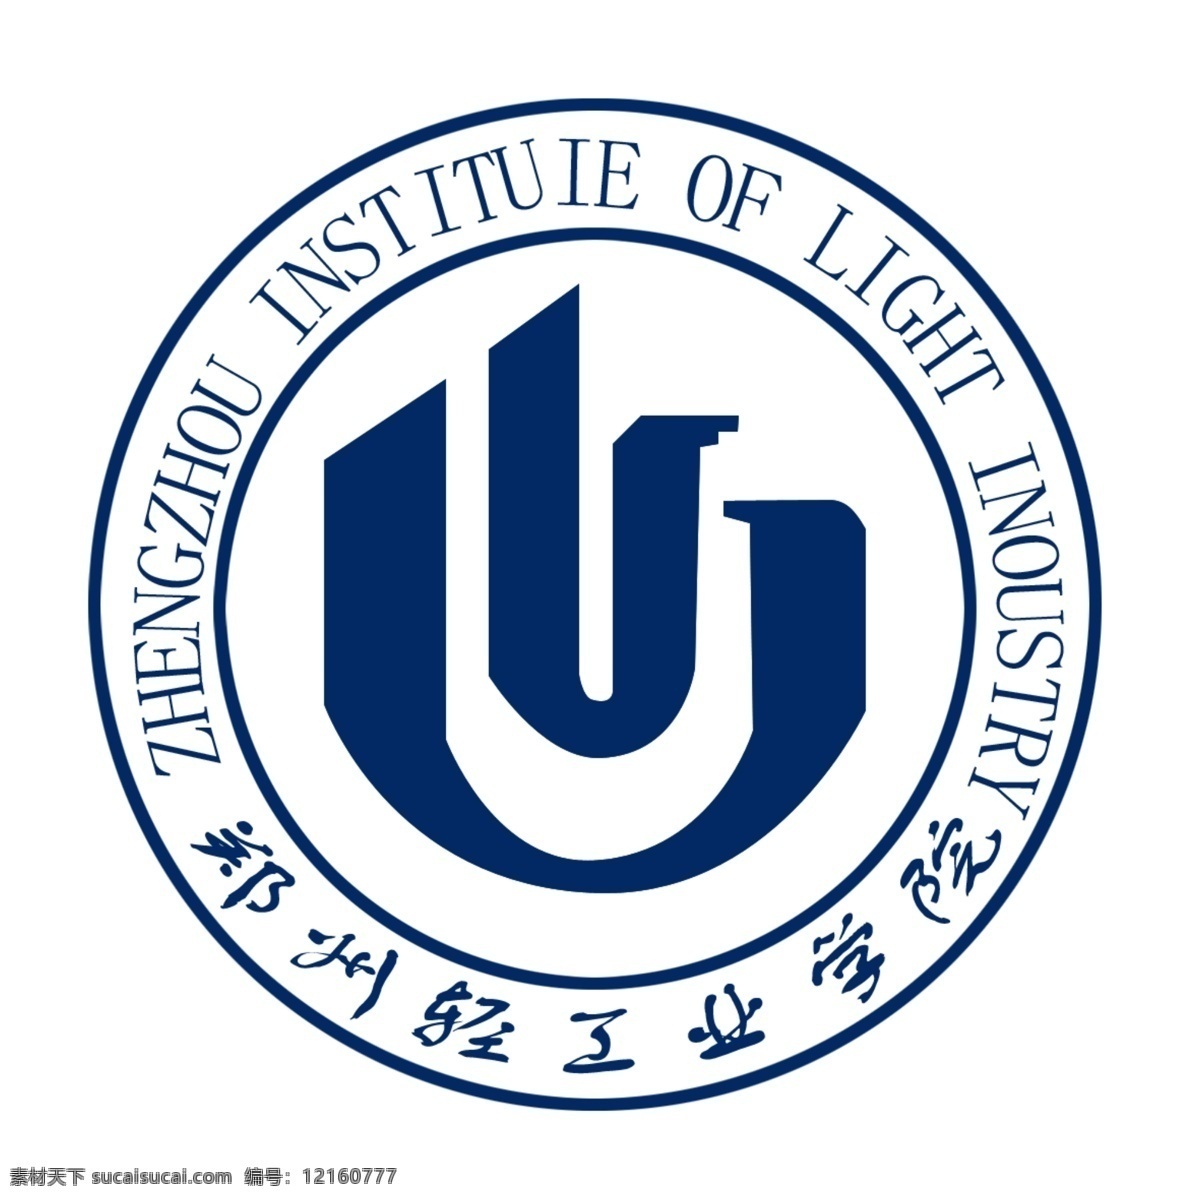 郑州 轻工业 学院 标志 轻工业学院 圆形 图章 标志设计 广告设计模板 源文件